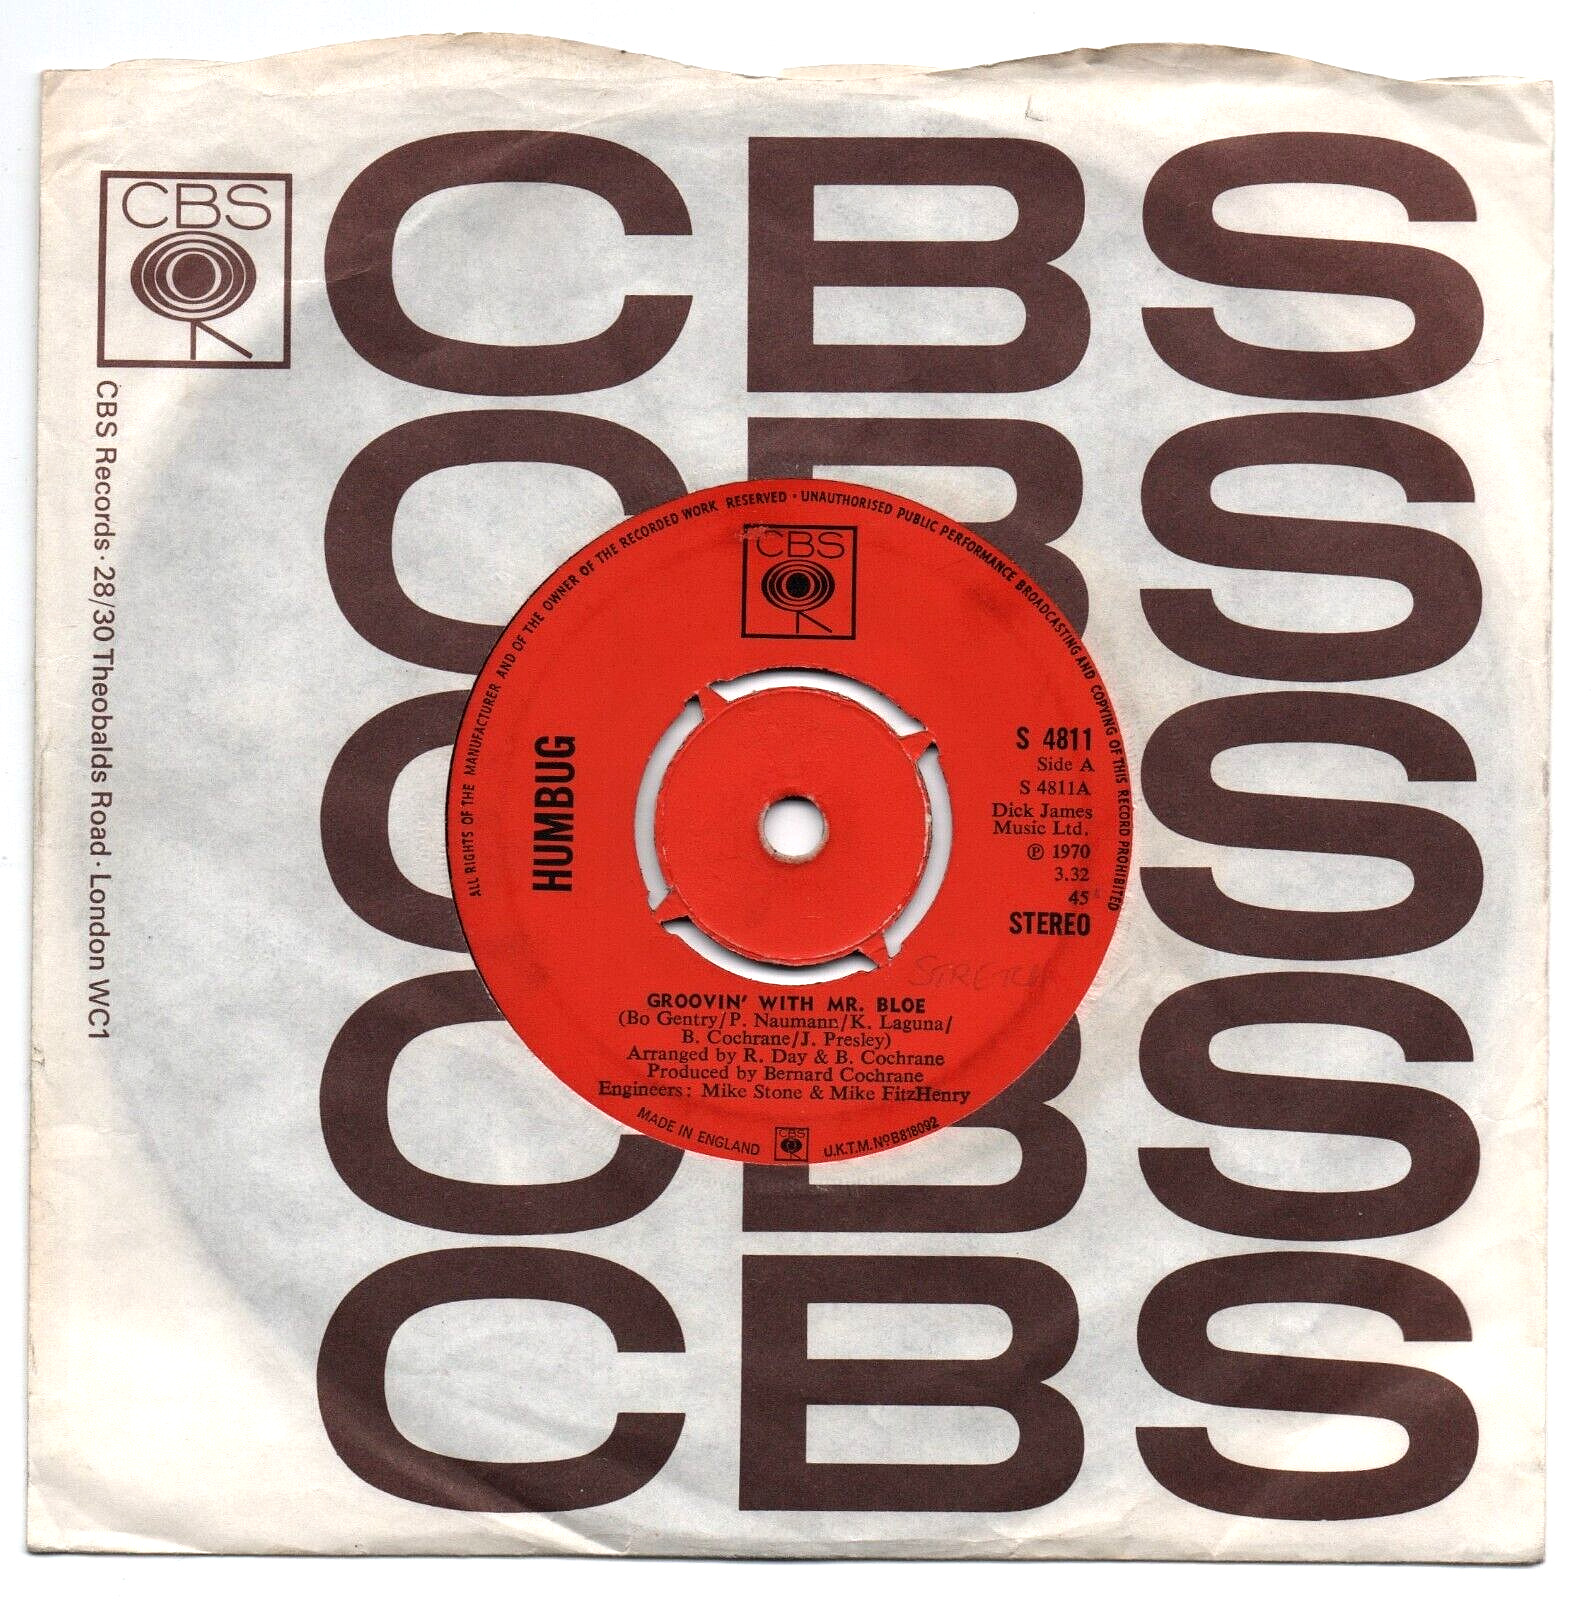 HUMBUG - GROOVIN' WITH MR BLOE 7" 45 VINYL Rare 1970 UK Single Northern Soul Mod